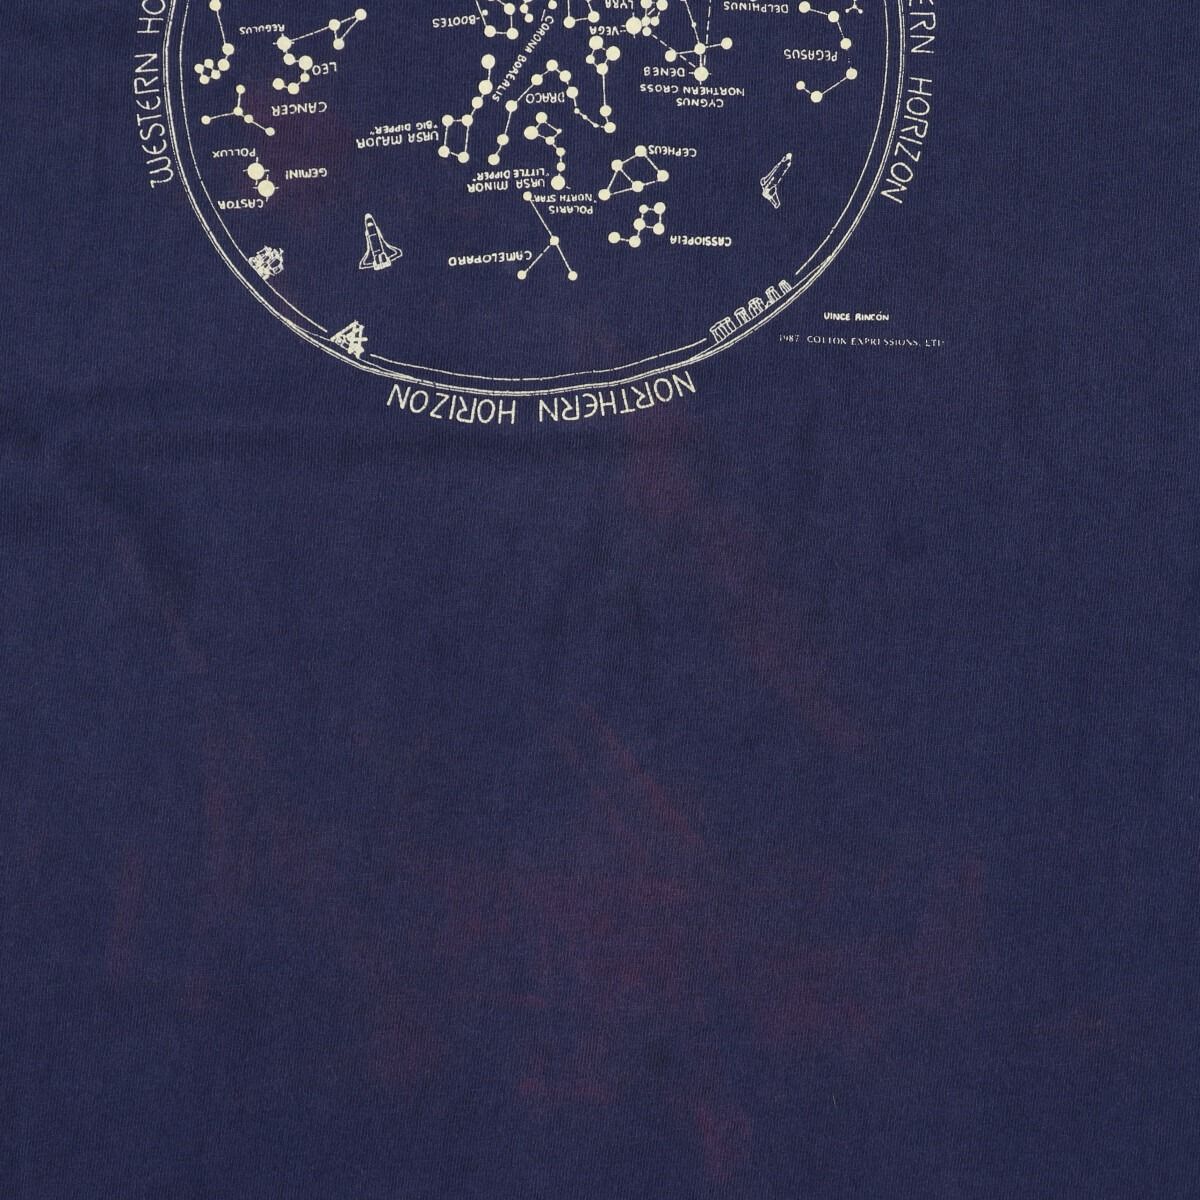 ビッグサイズ 80年代 フルーツオブザルーム FRUIT OF THE ROOM 星座柄 プリントTシャツ USA製 フリーサイズ ヴィンテージ /eaa339819